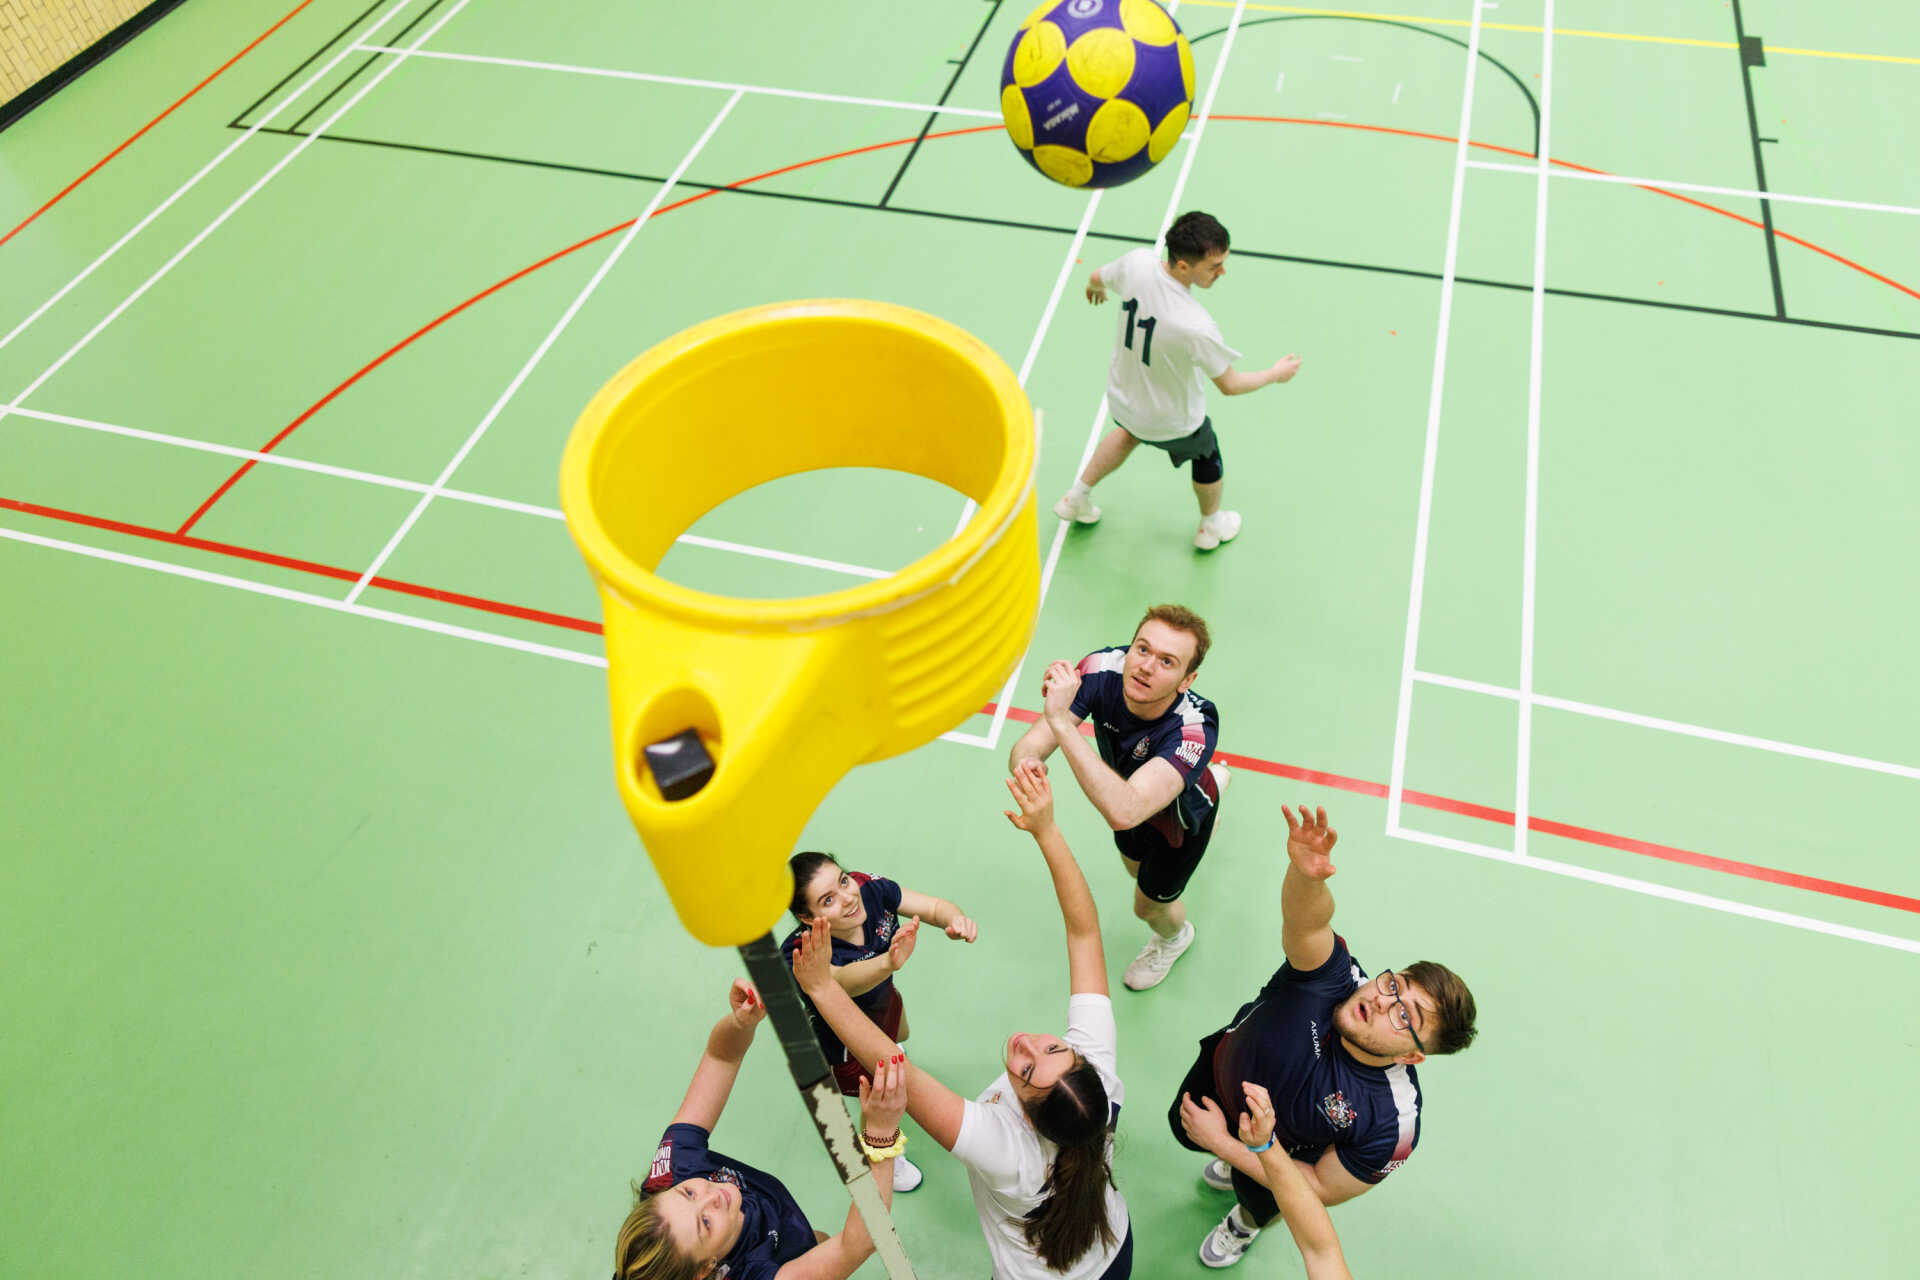 Students playing Korfball